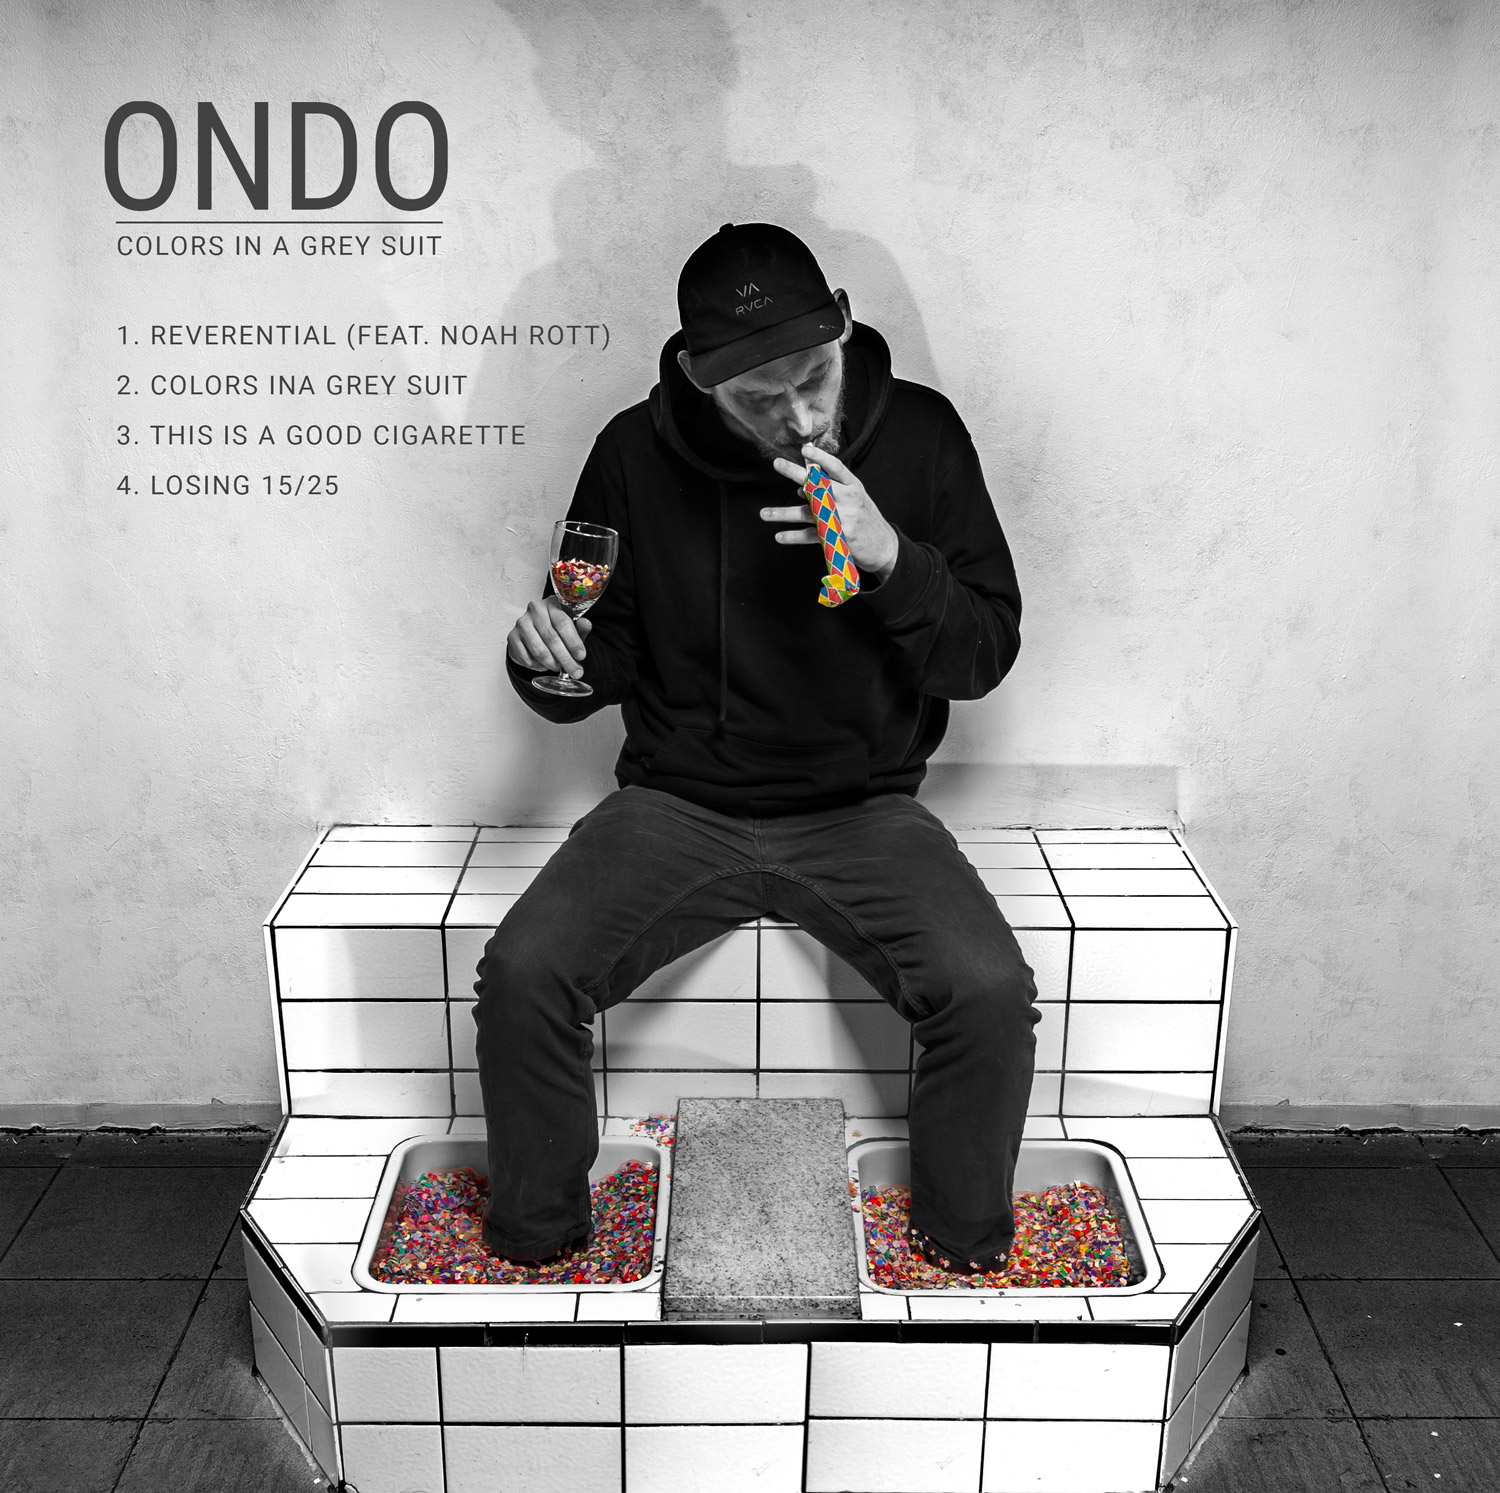 Ondo - Fotografie von Johannes Hoenig